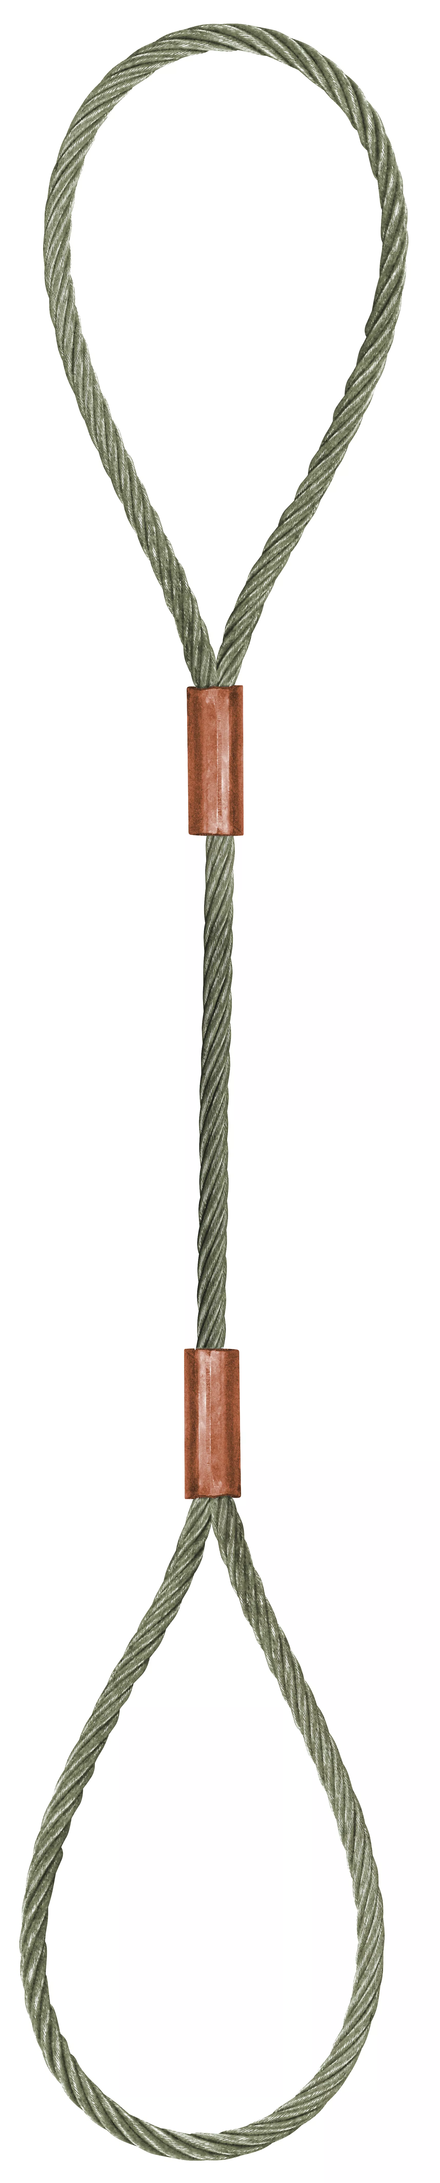 Élingue câble inox 2 grandes boucles d.8 mm cmu 0,68 t LEVAC - 4700EI